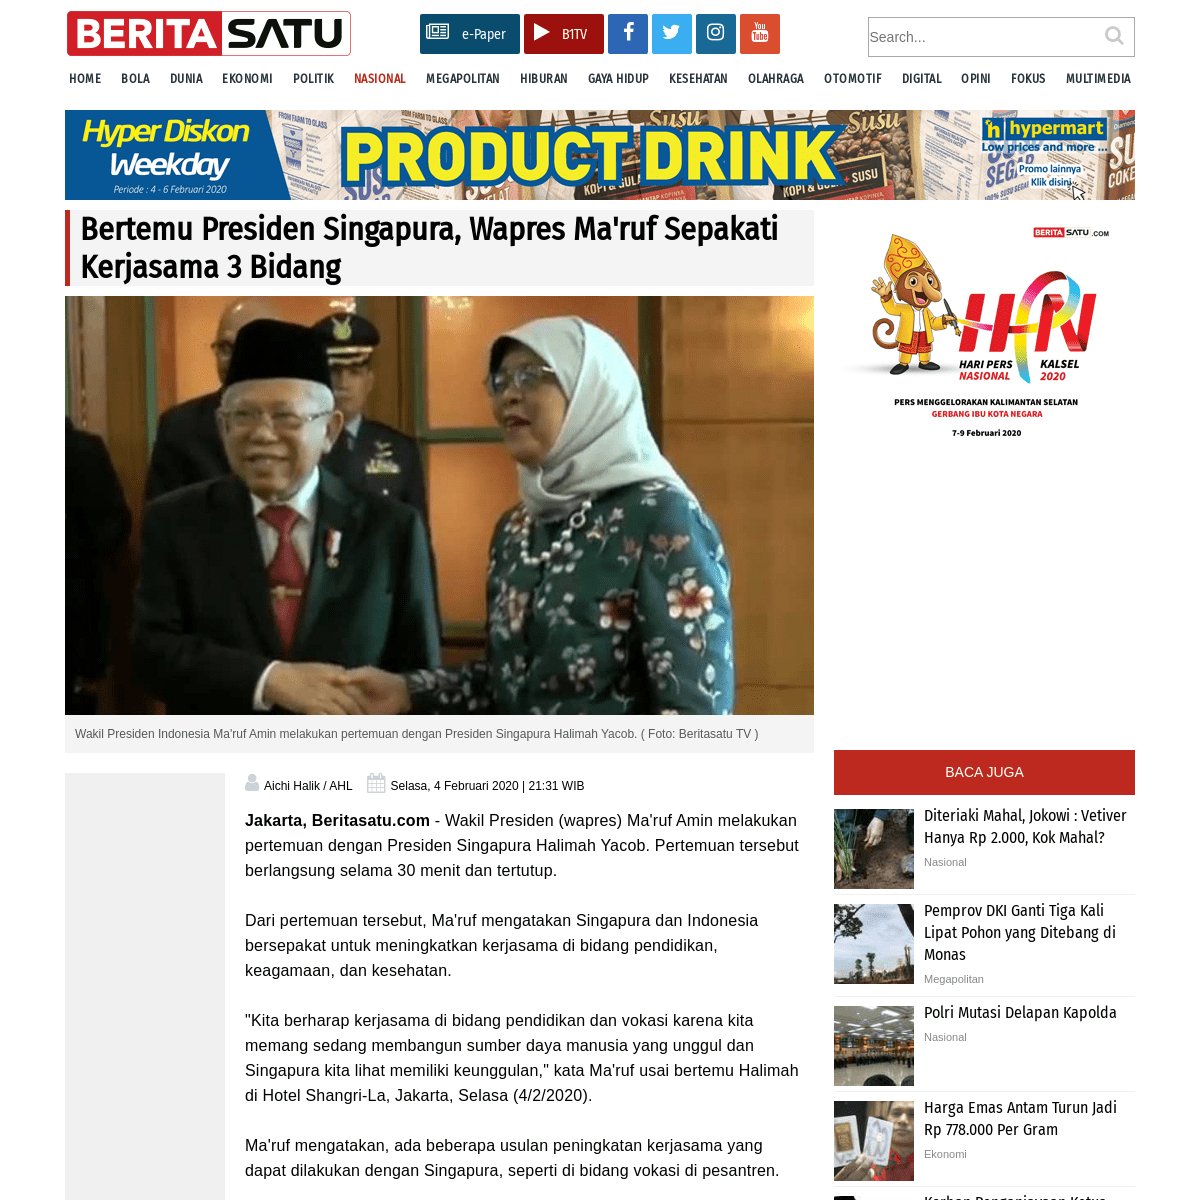 A complete backup of www.beritasatu.com/nasional/598739/bertemu-presiden-singapura-wapres-maruf-sepakati-kerjasama-3-bidang